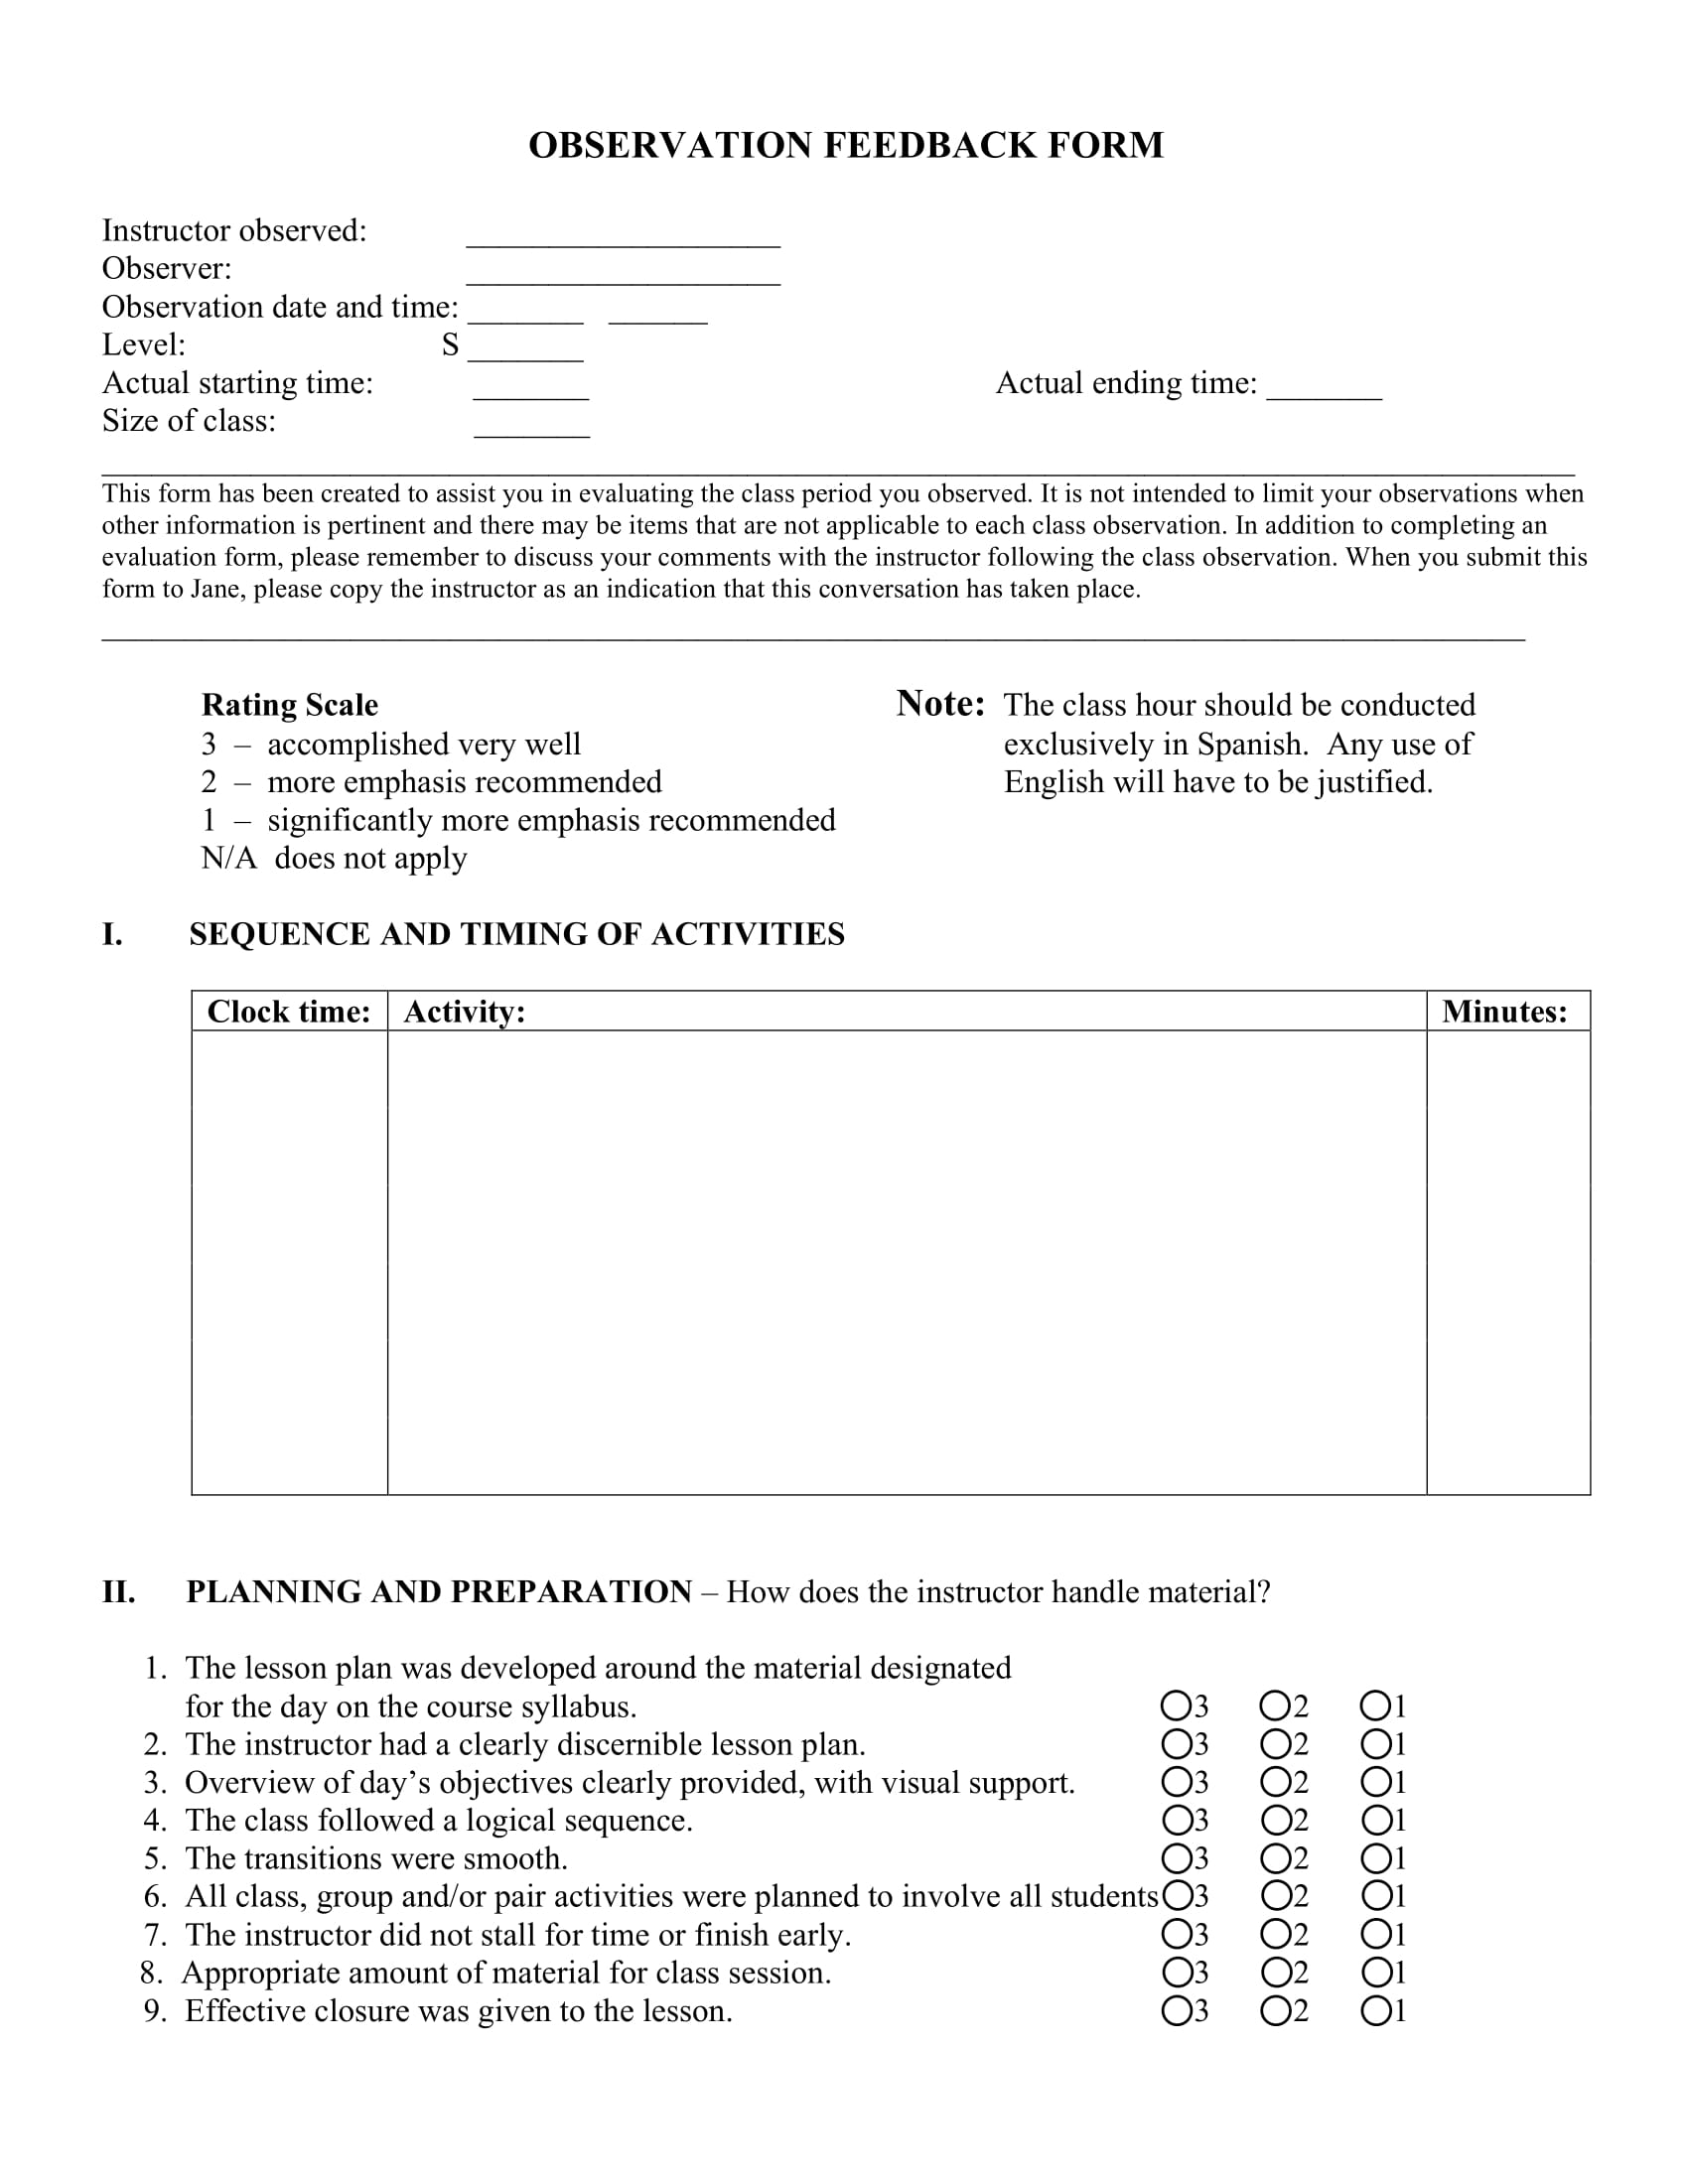 observation feedback form sample 1